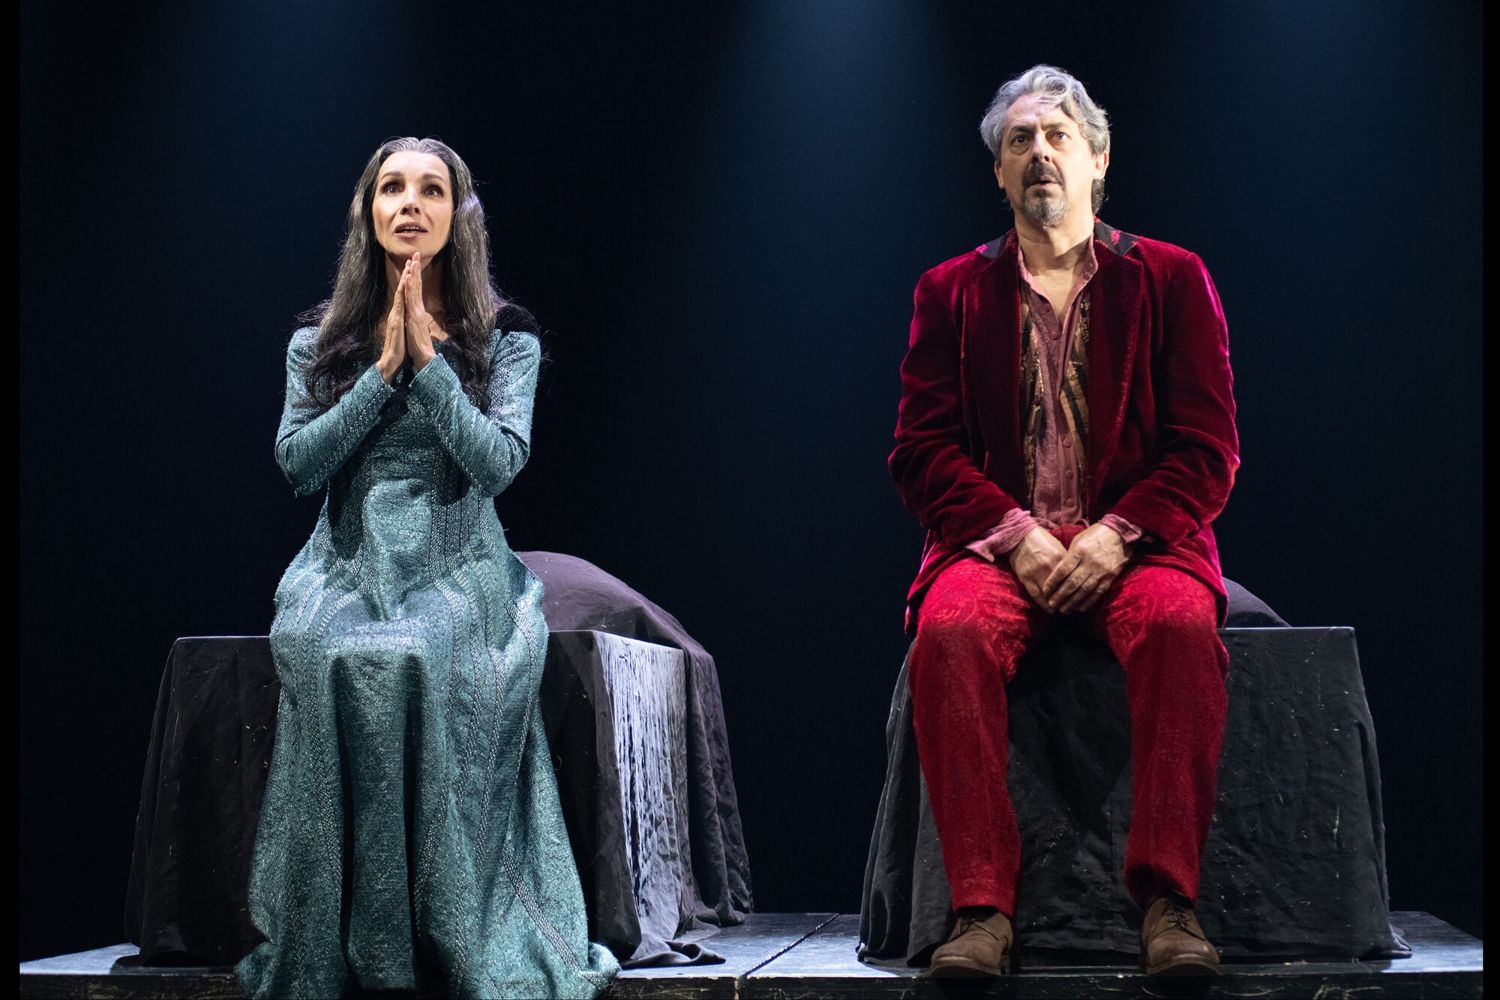 Un clásico de Shakespeare llega al Auditorio Ciudad de León de la mano de Ana Belén y Jesús Noguero 